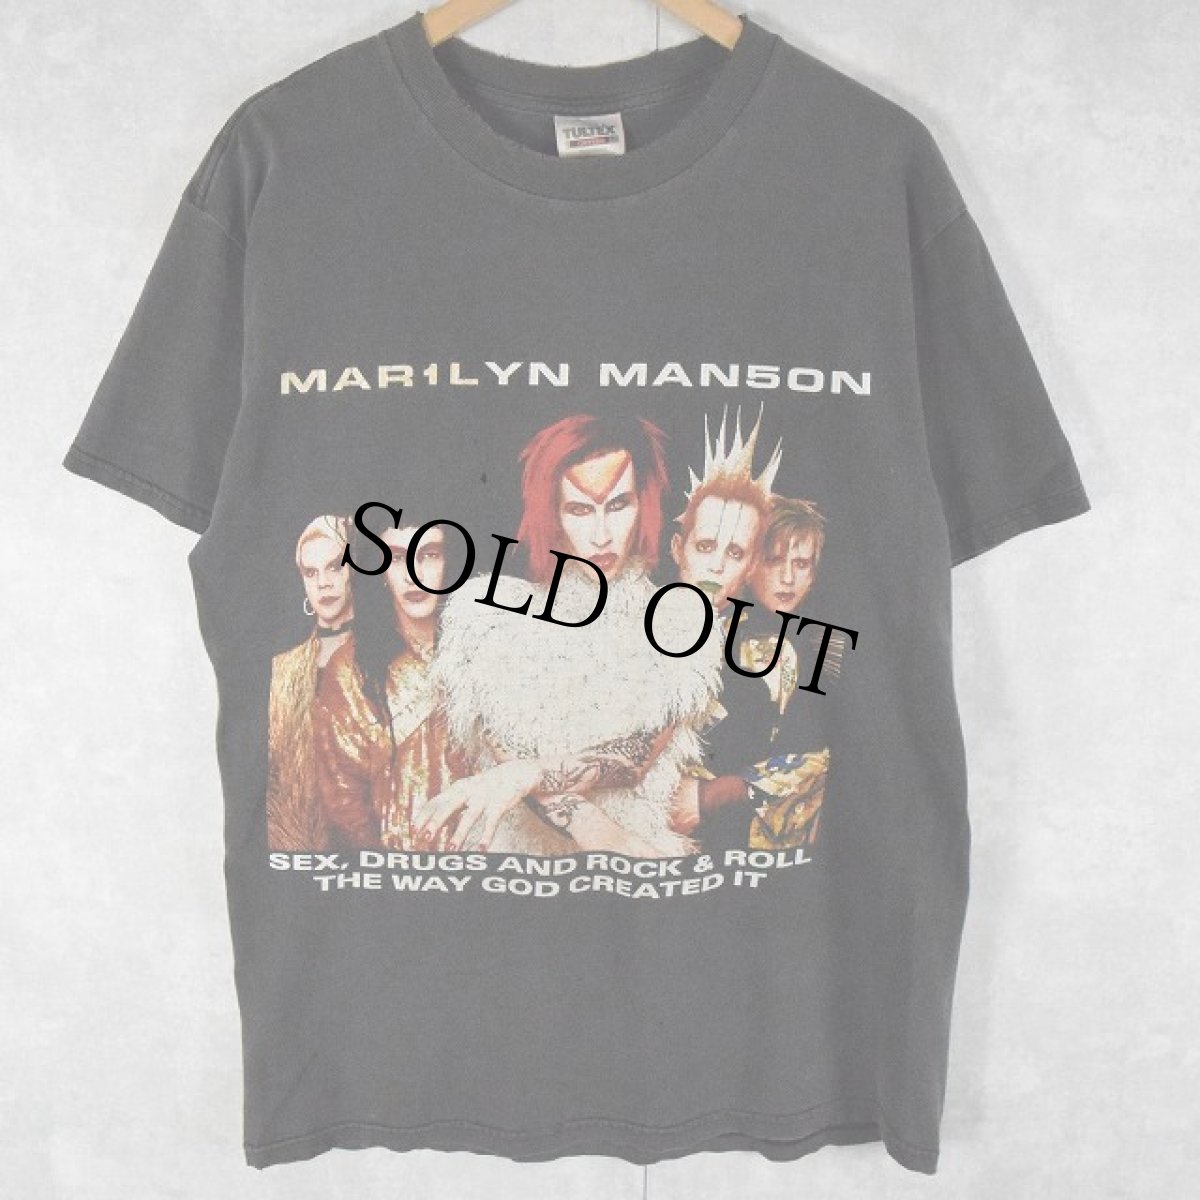 画像1: 90's MARILYN MANSON "ROCK IS DEAD TOUR 1999" ロックバンドプリントTシャツ BLACK L (1)